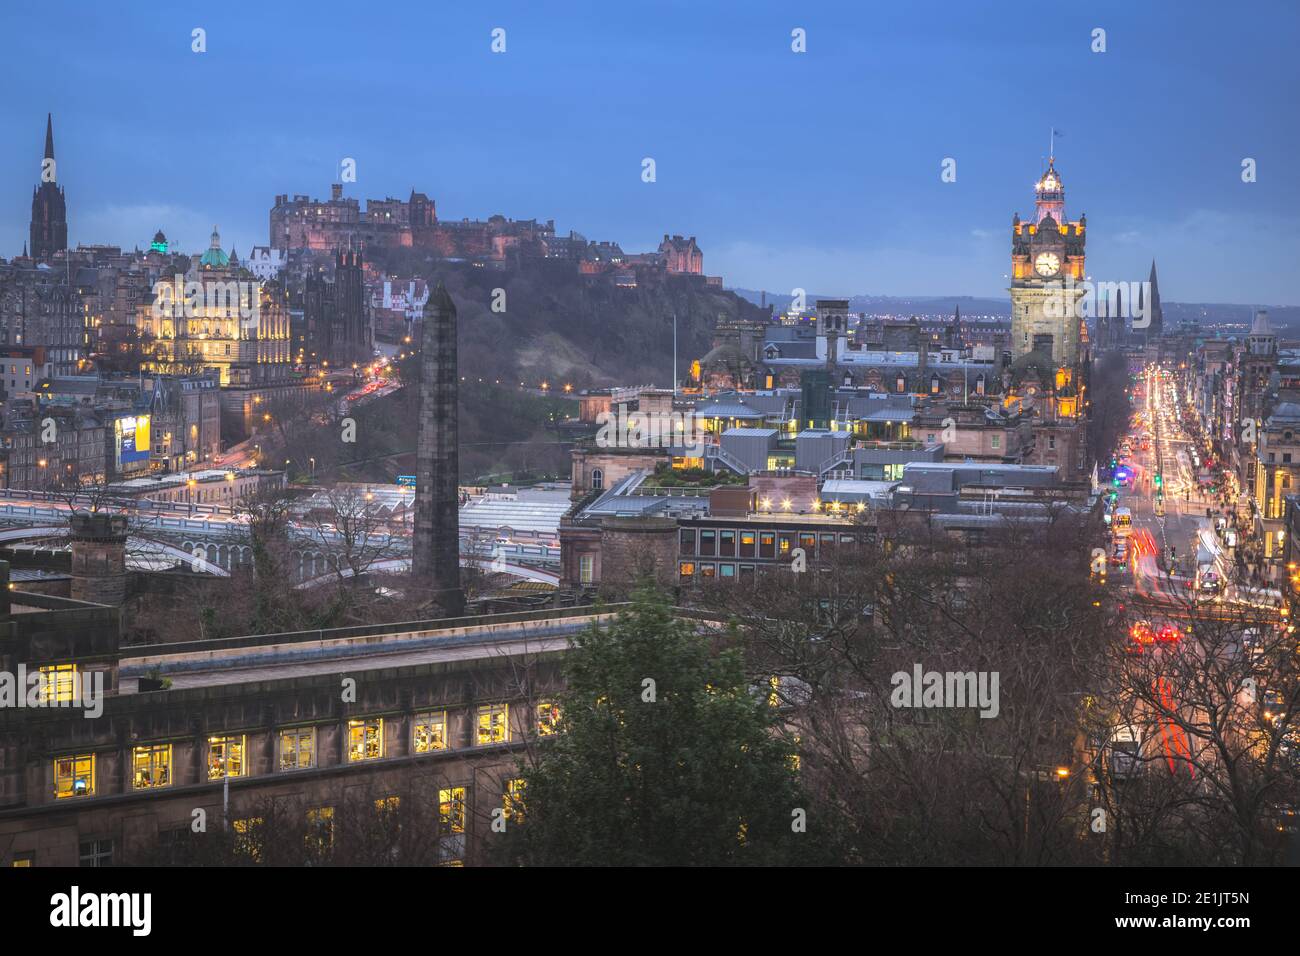 Classica vista serale da Calton Hill con Princes Street, il castello di Edimburgo e la torre dell'orologio Balmoral di Edimburgo, Scozia. Foto Stock